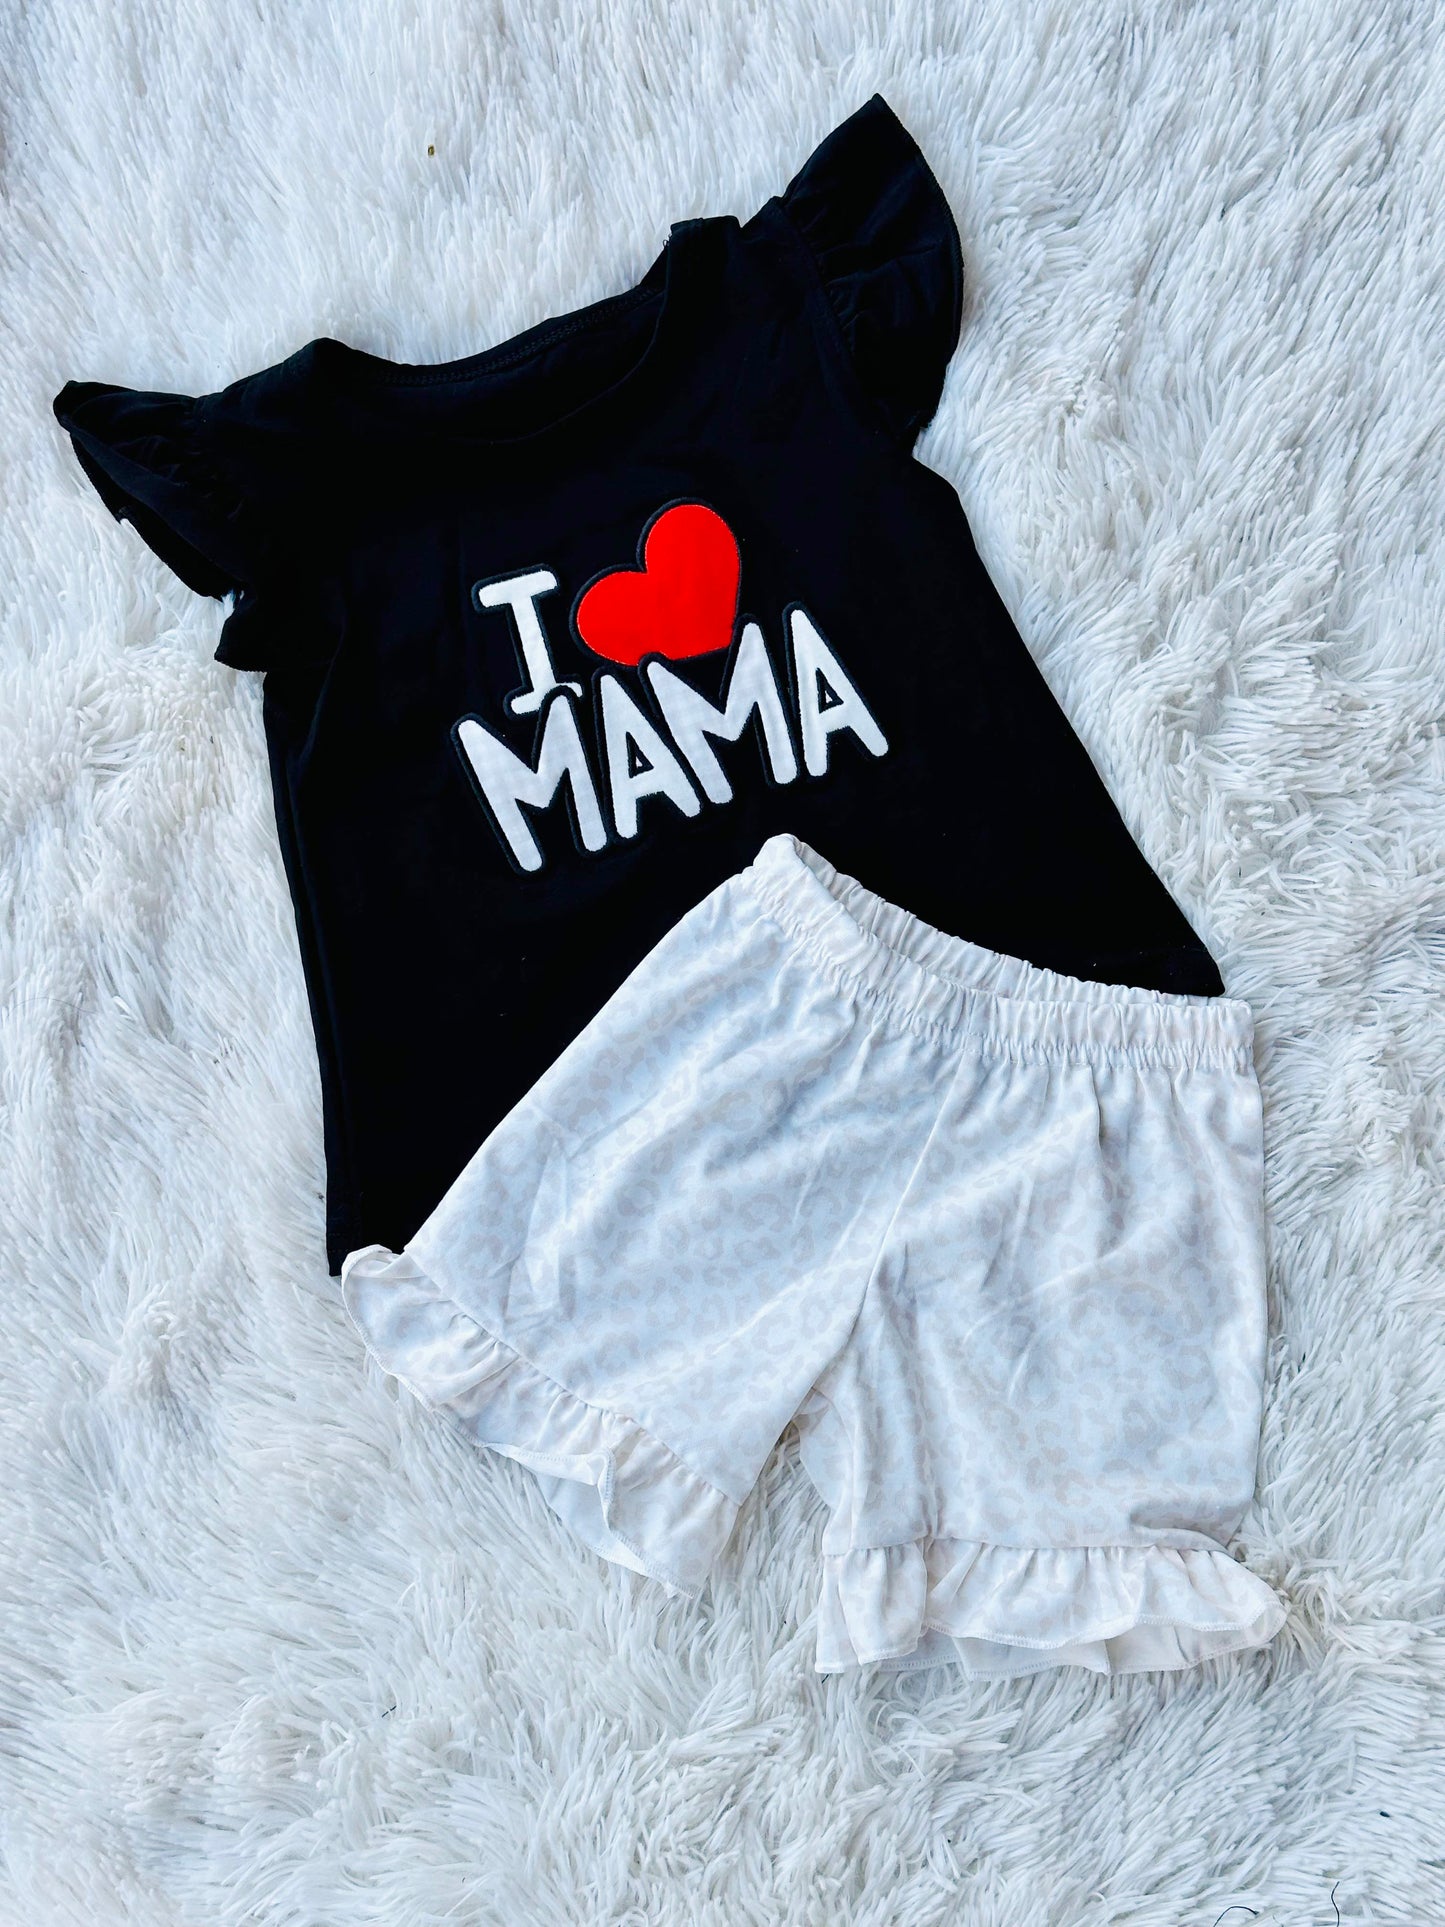 I Love Mama Short Set